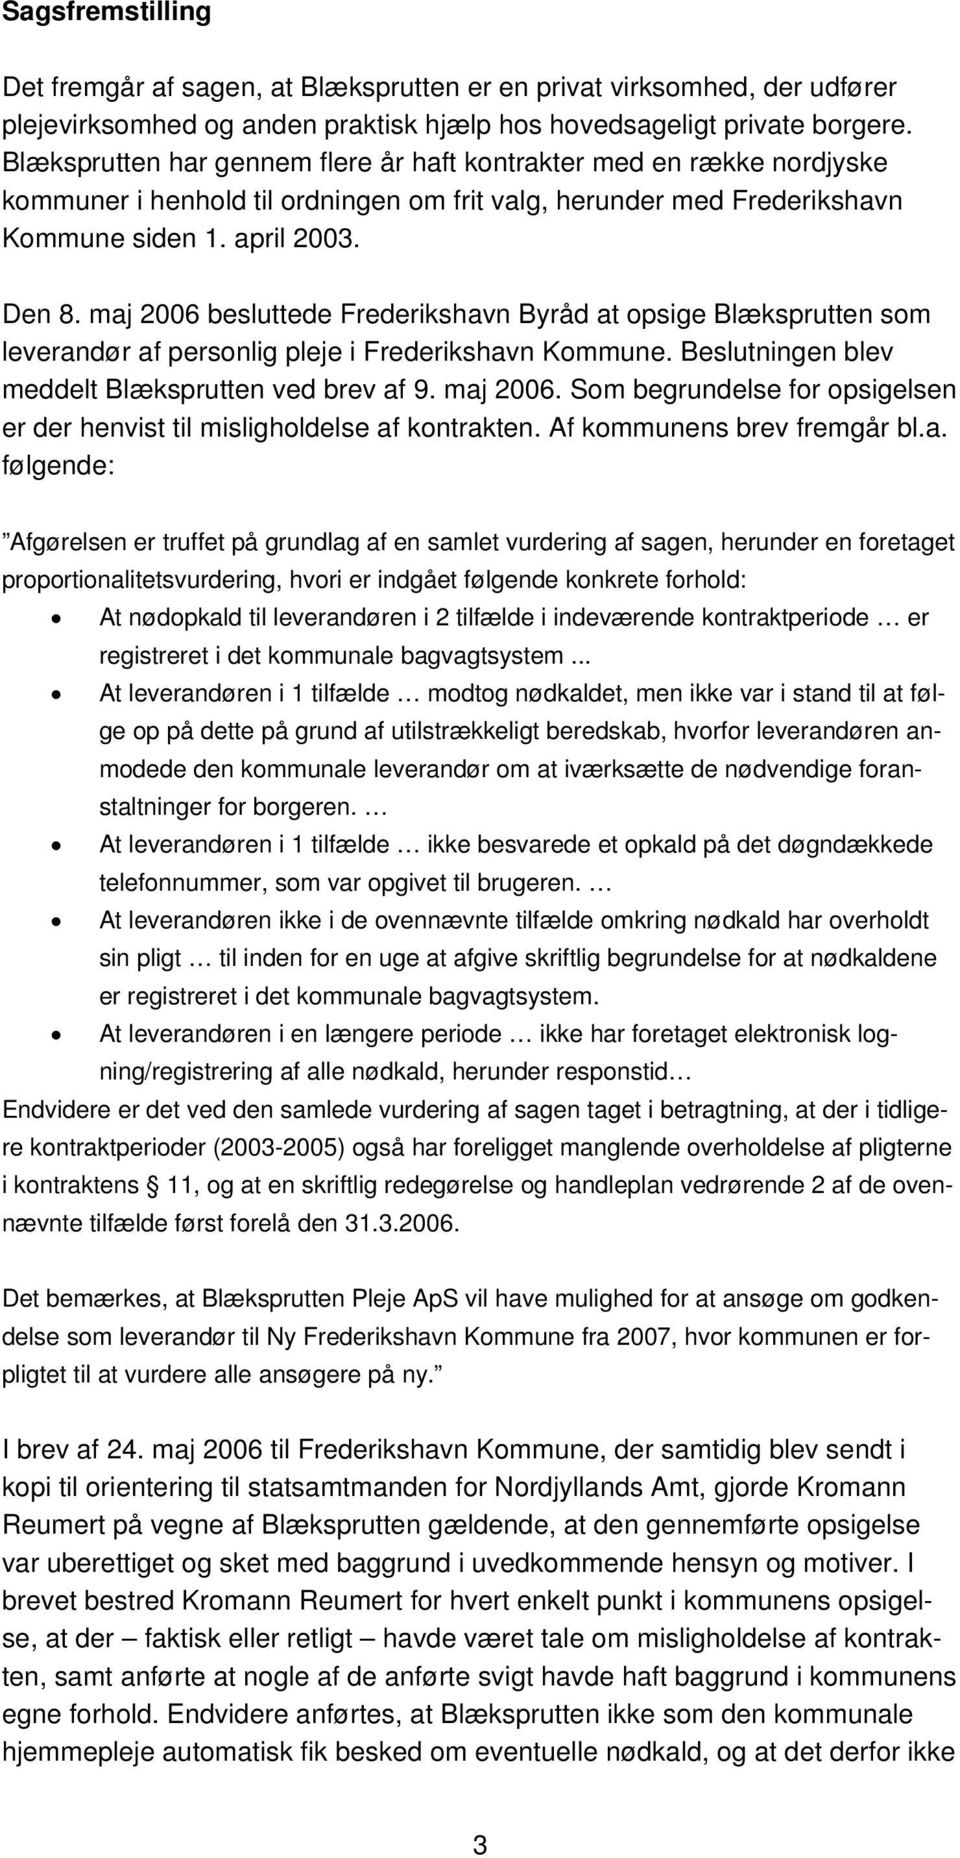 maj 2006 besluttede Frederikshavn Byråd at opsige Blæksprutten som leverandør af personlig pleje i Frederikshavn Kommune. Beslutningen blev meddelt Blæksprutten ved brev af 9. maj 2006.